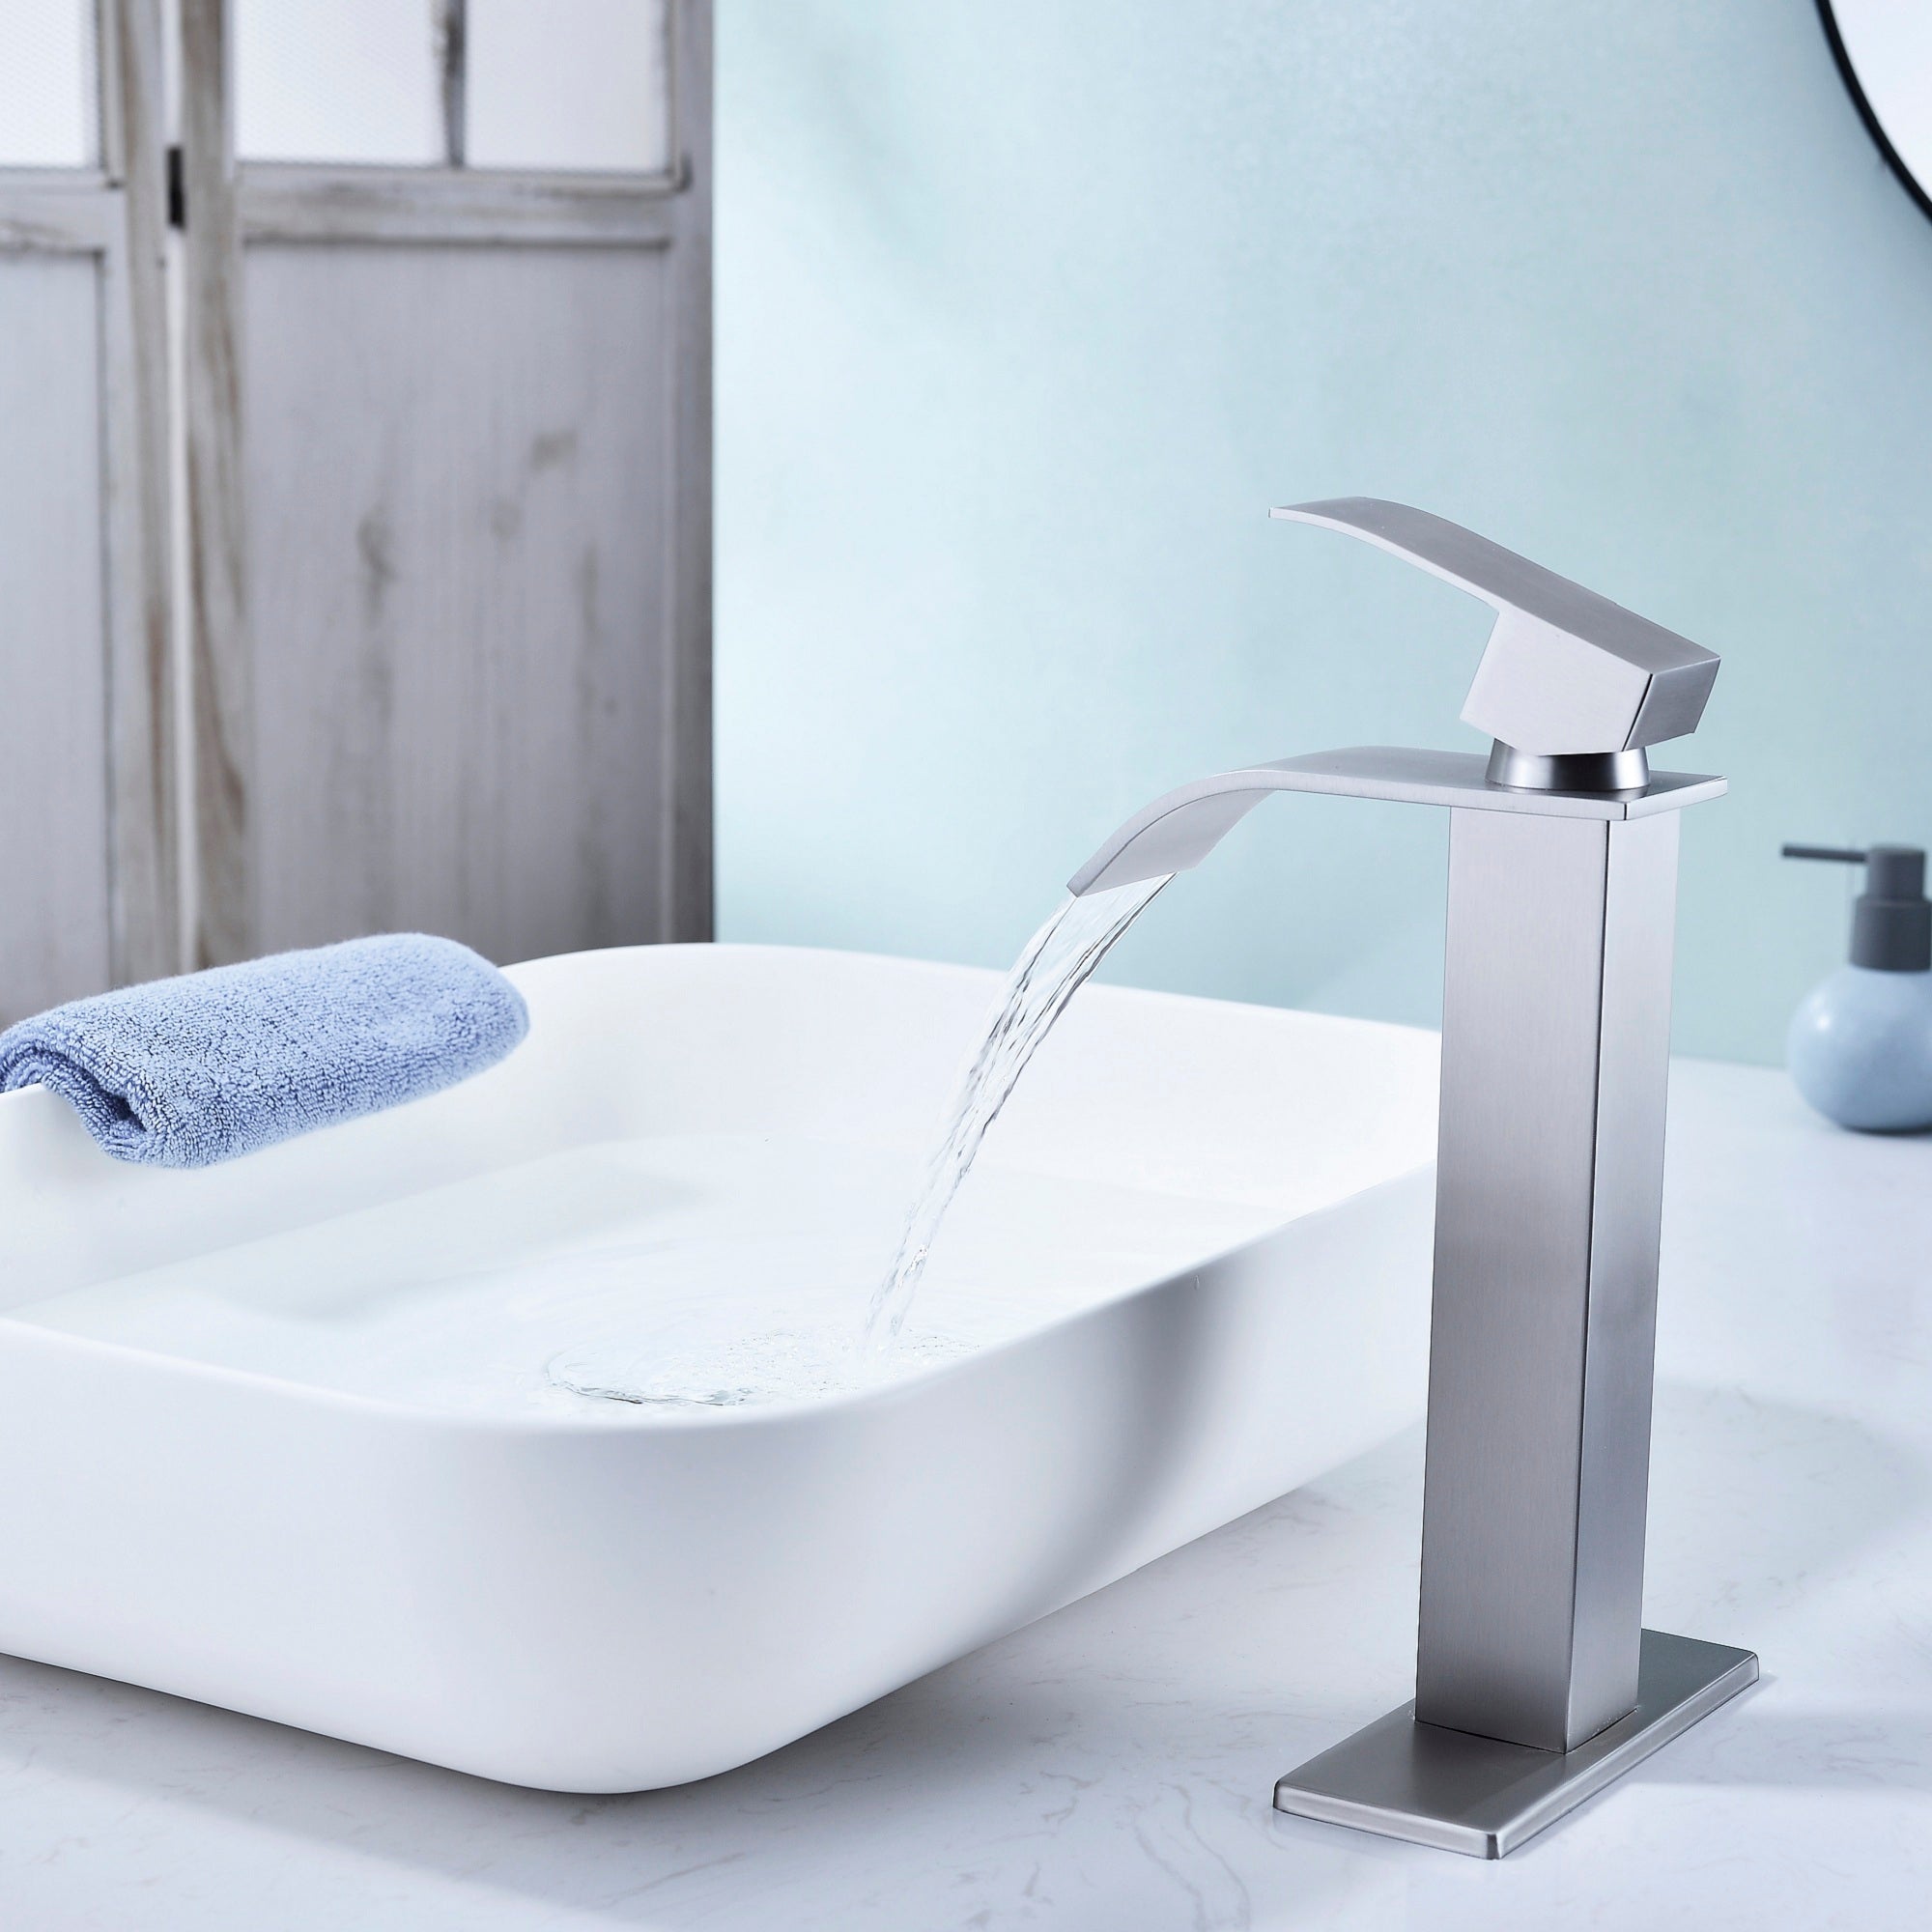 Waterfall Spout Bathroom Faucet, Single Handle Bathroom Vanity Sink Faucet - Brushed Nickel